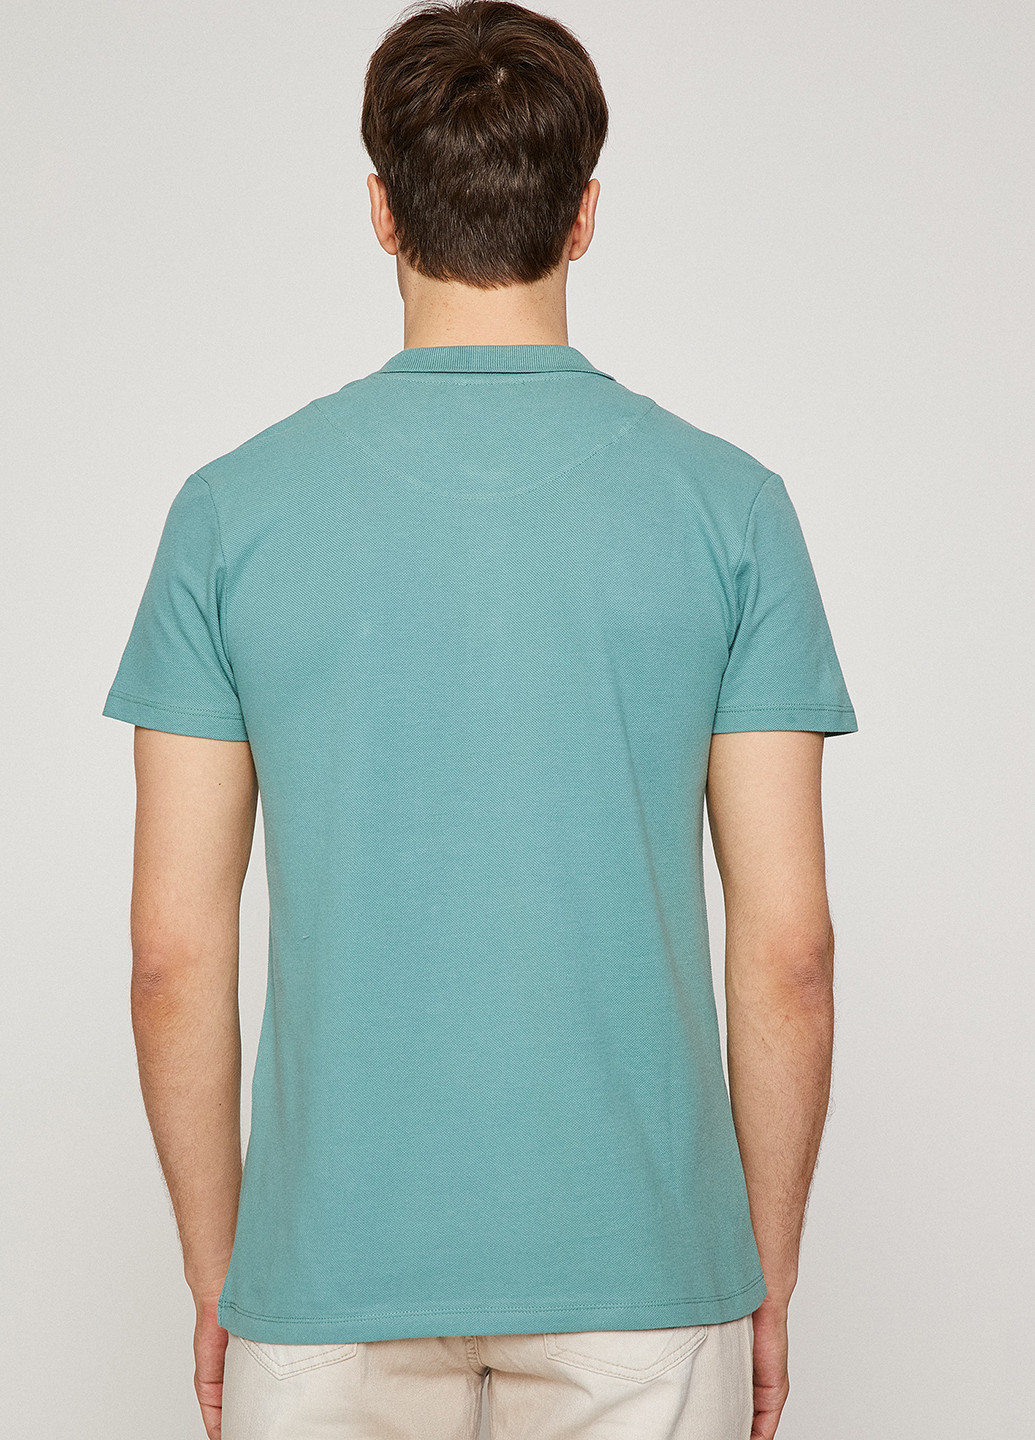 Бирюзовая футболка-поло для мужчин KOTON однотонная